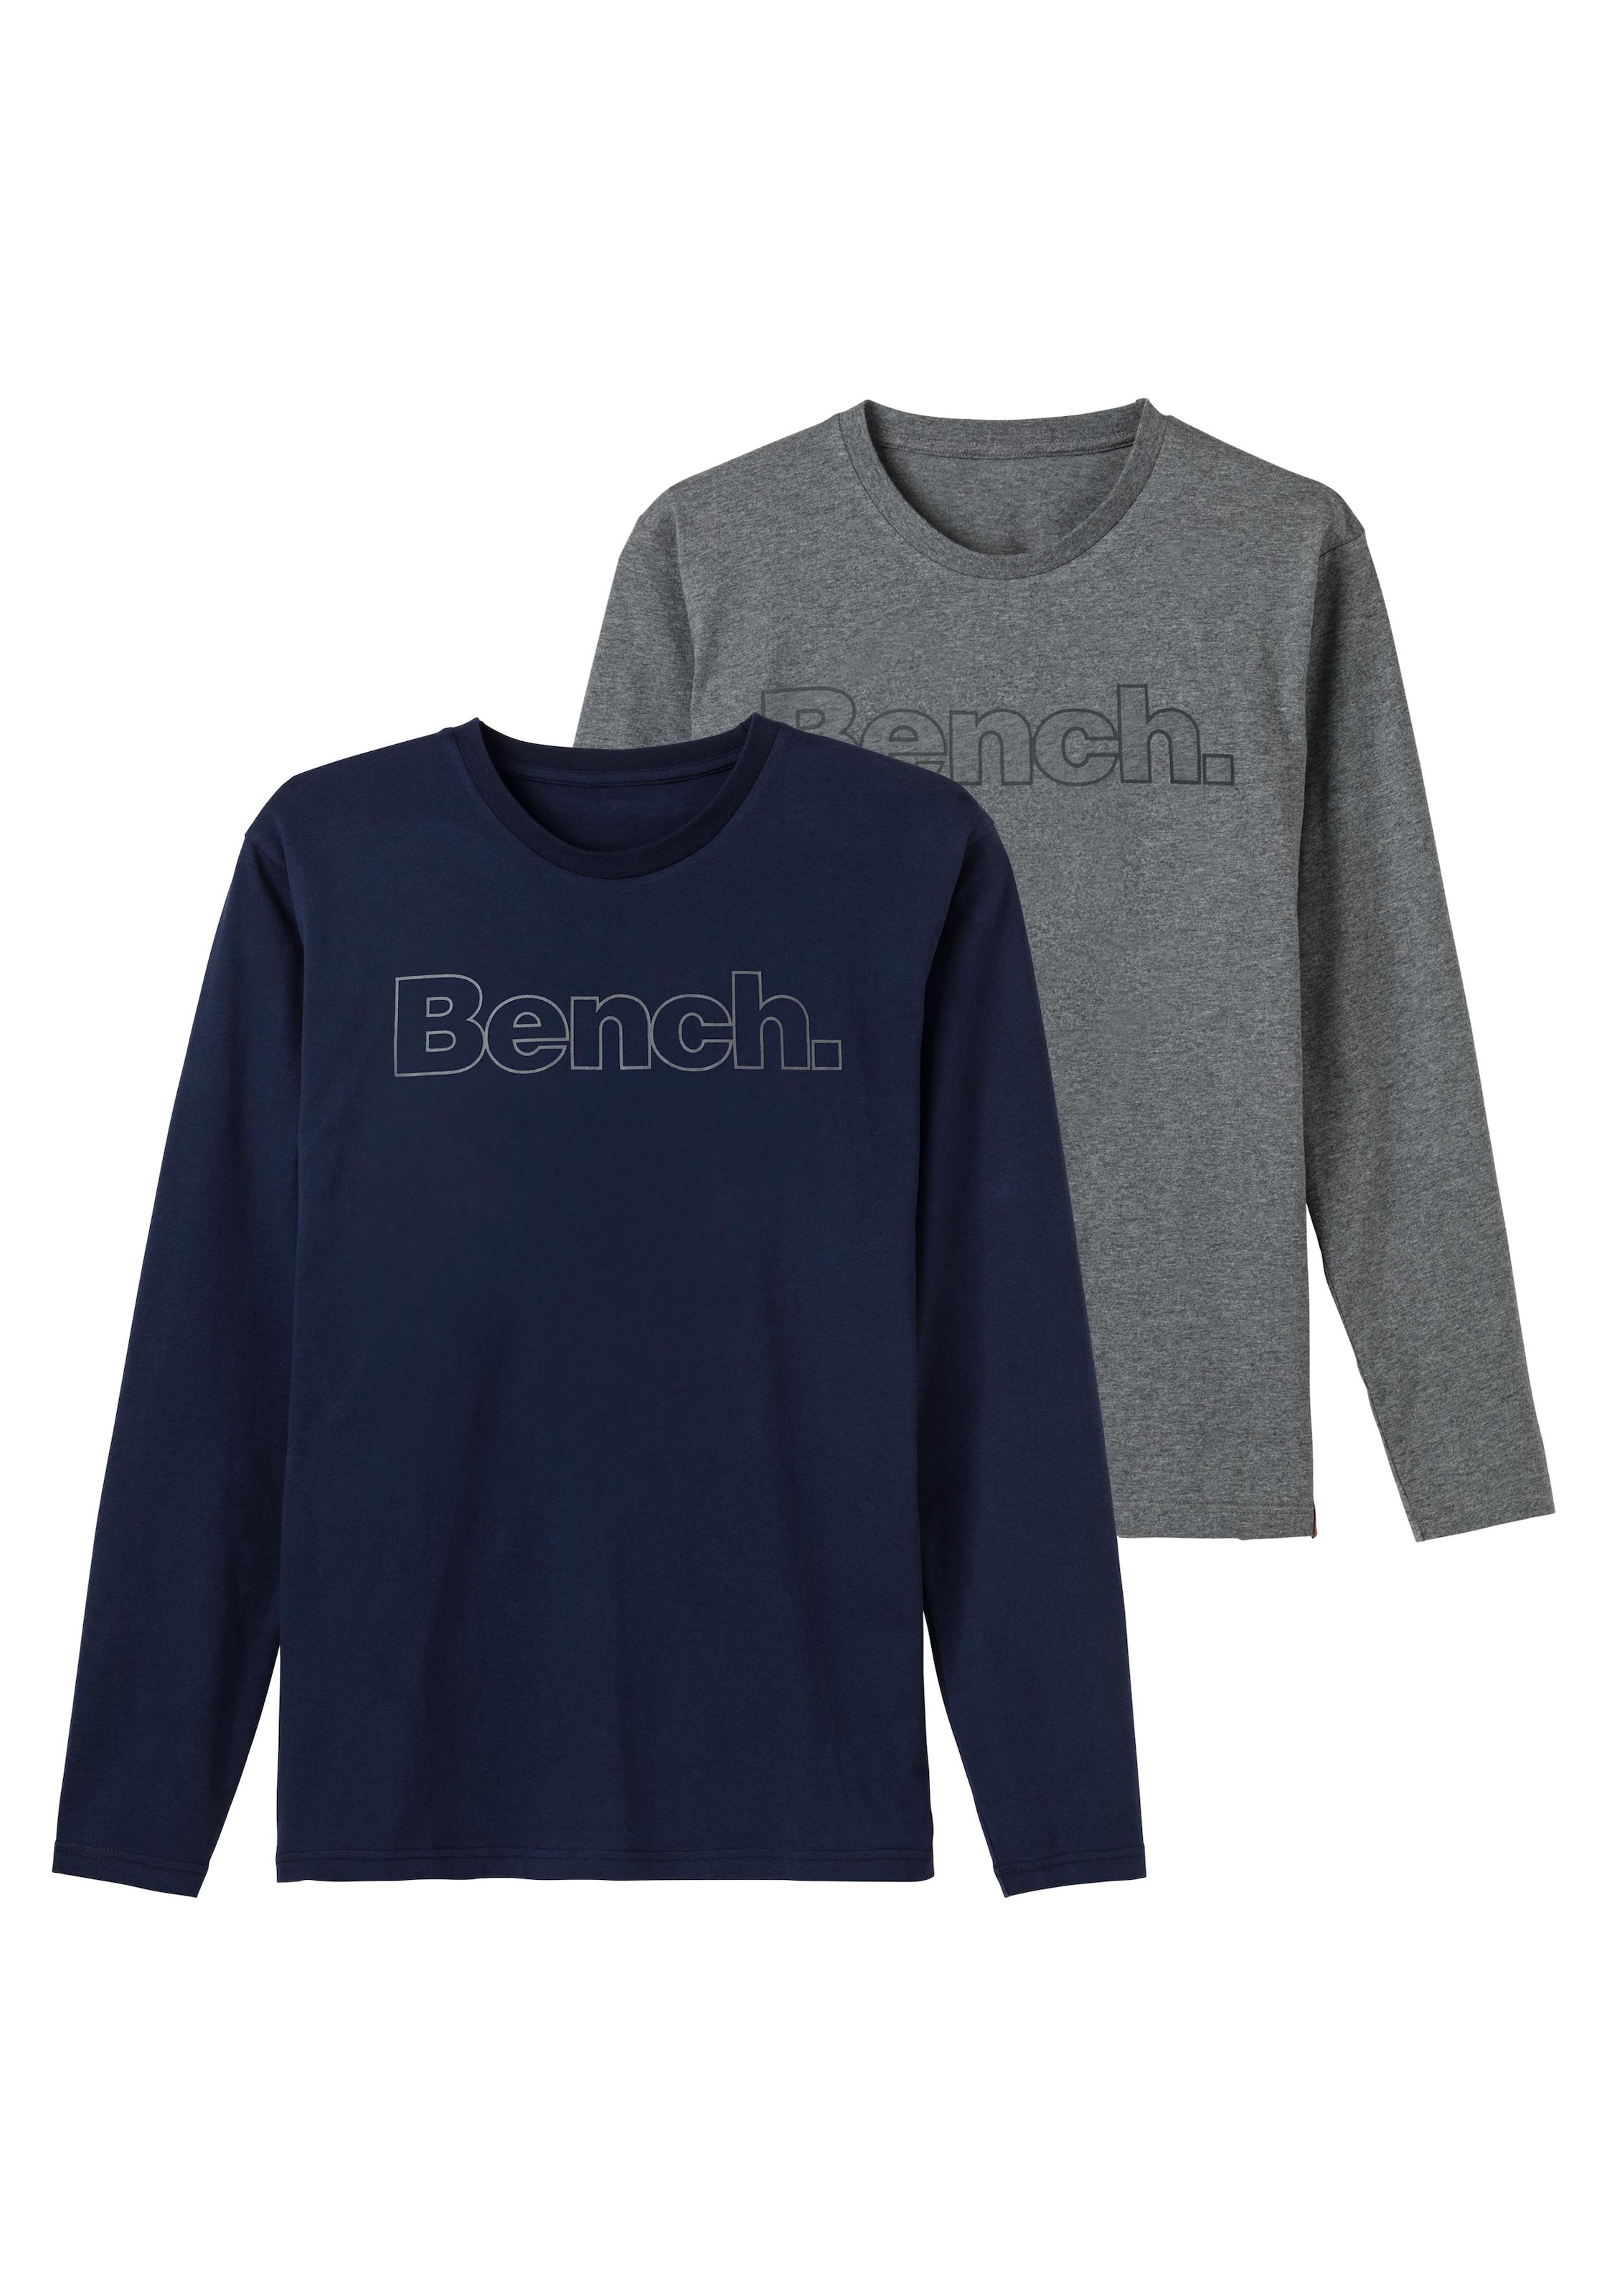 Bench. online (2 Langarmshirt, OTTO bestellen mit Bench. Loungewear vorn Print bei tlg.),